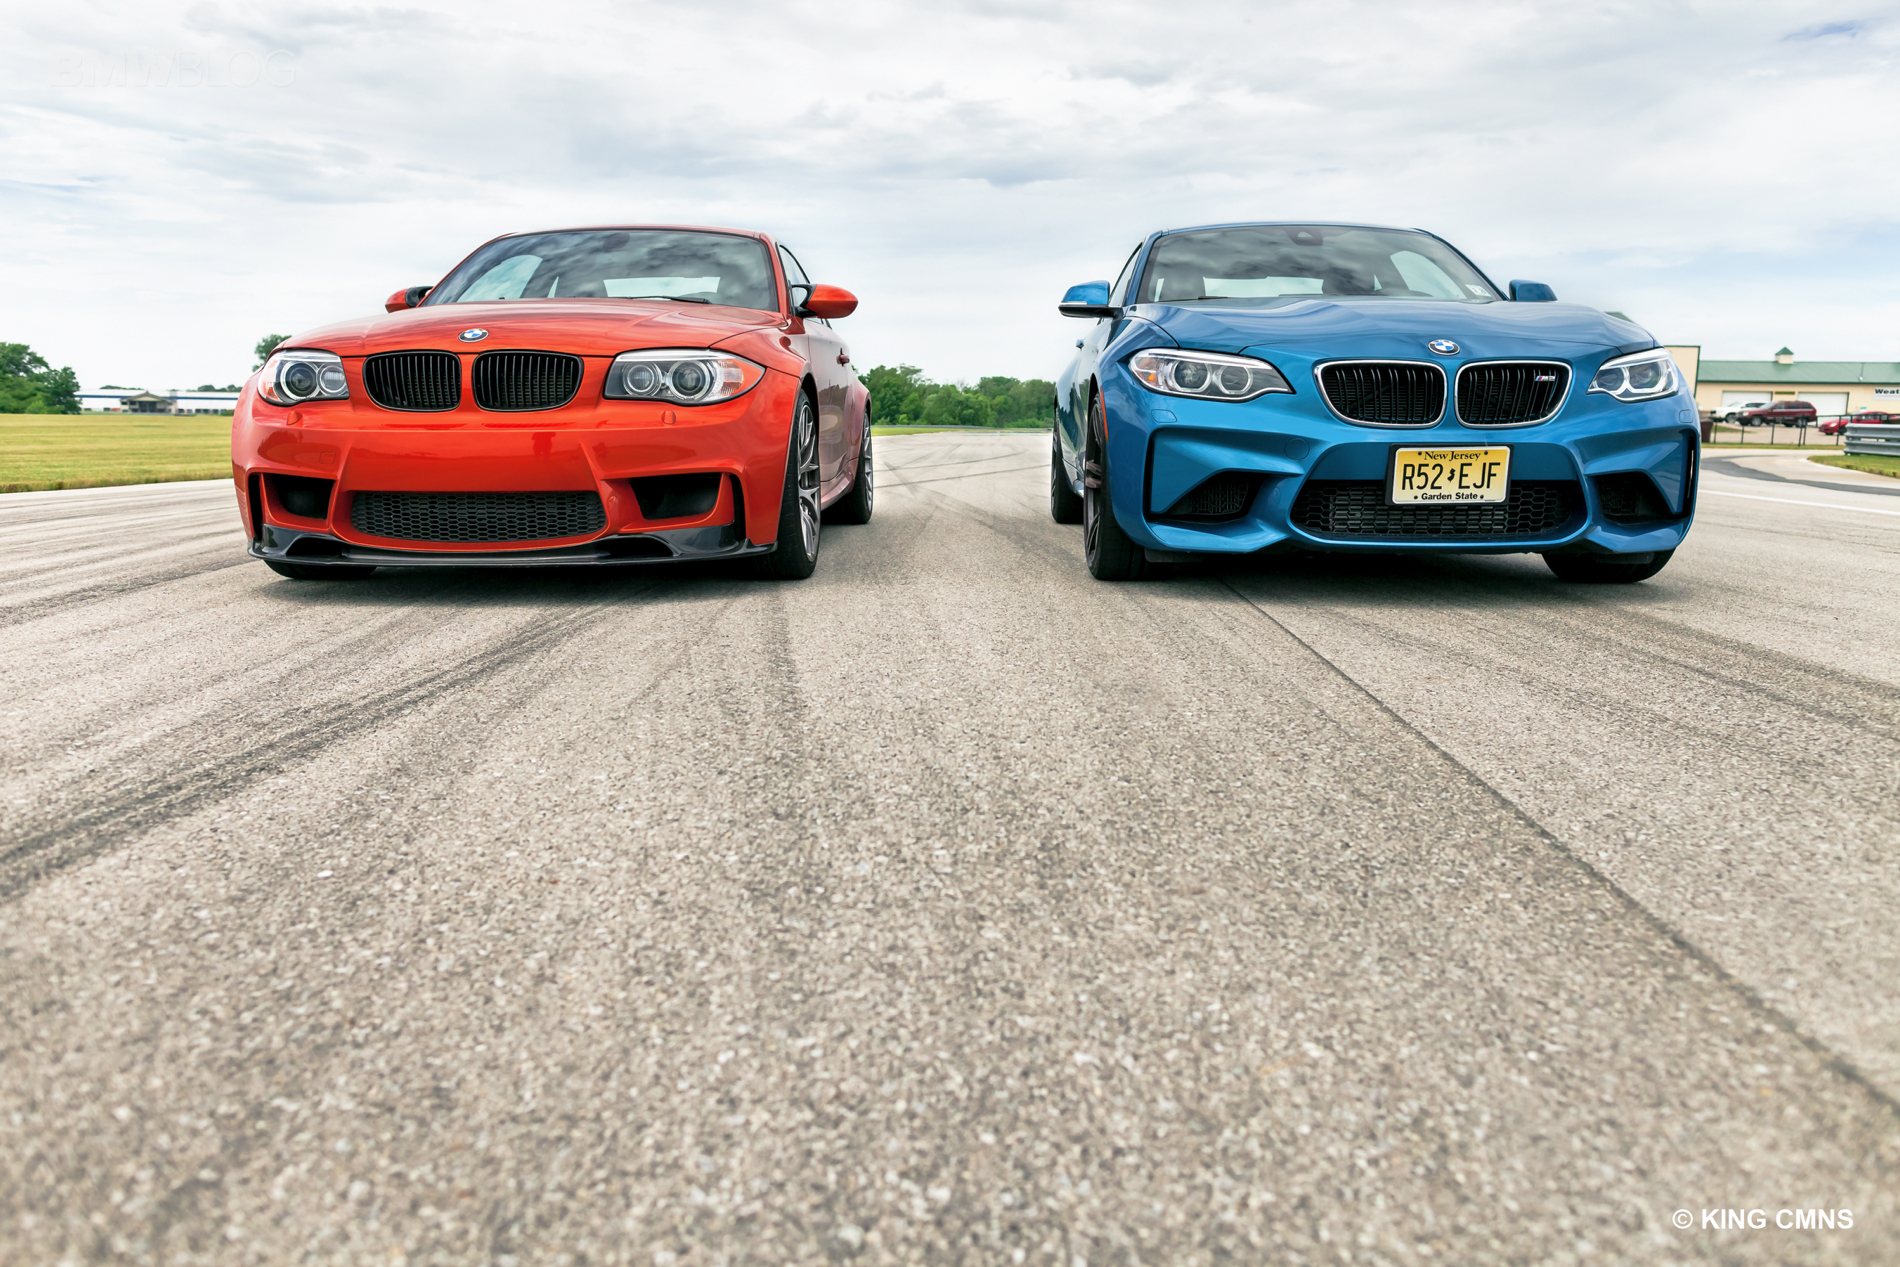 TEST DRIVE: BMW M2 vs BMW 1 Series M